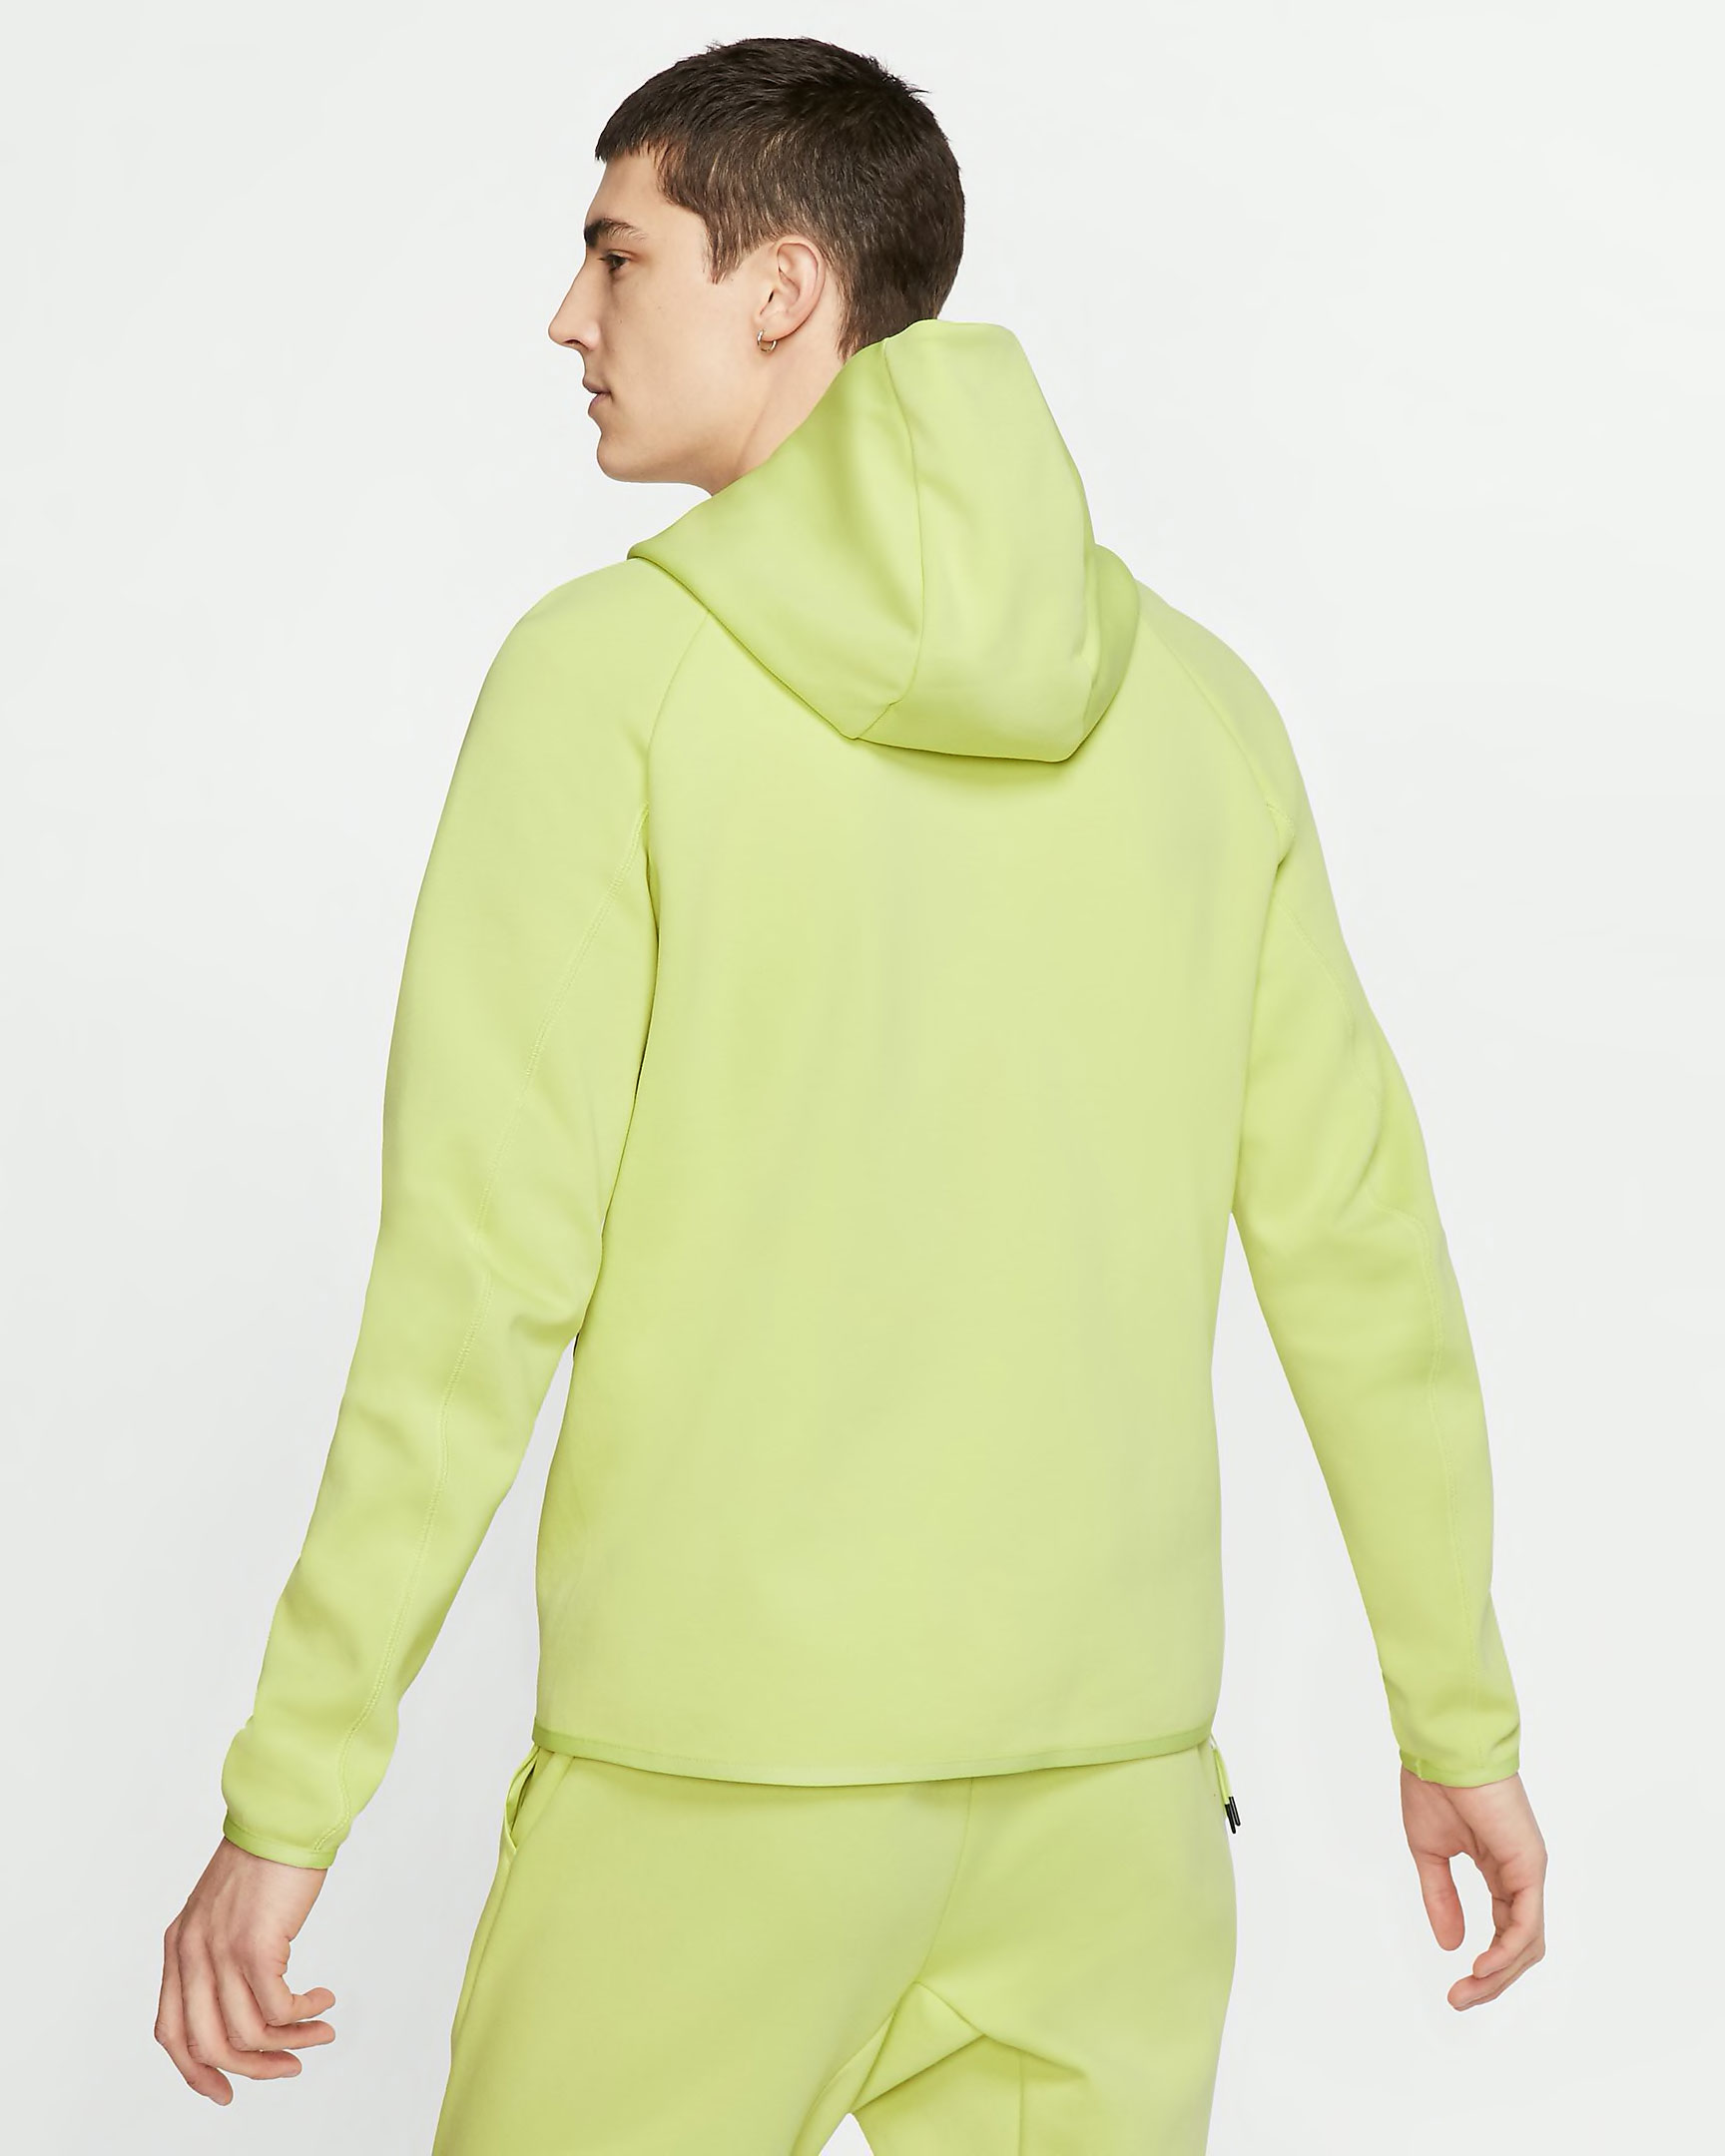 nike-volt-green-tech-fleece-hoodie-2